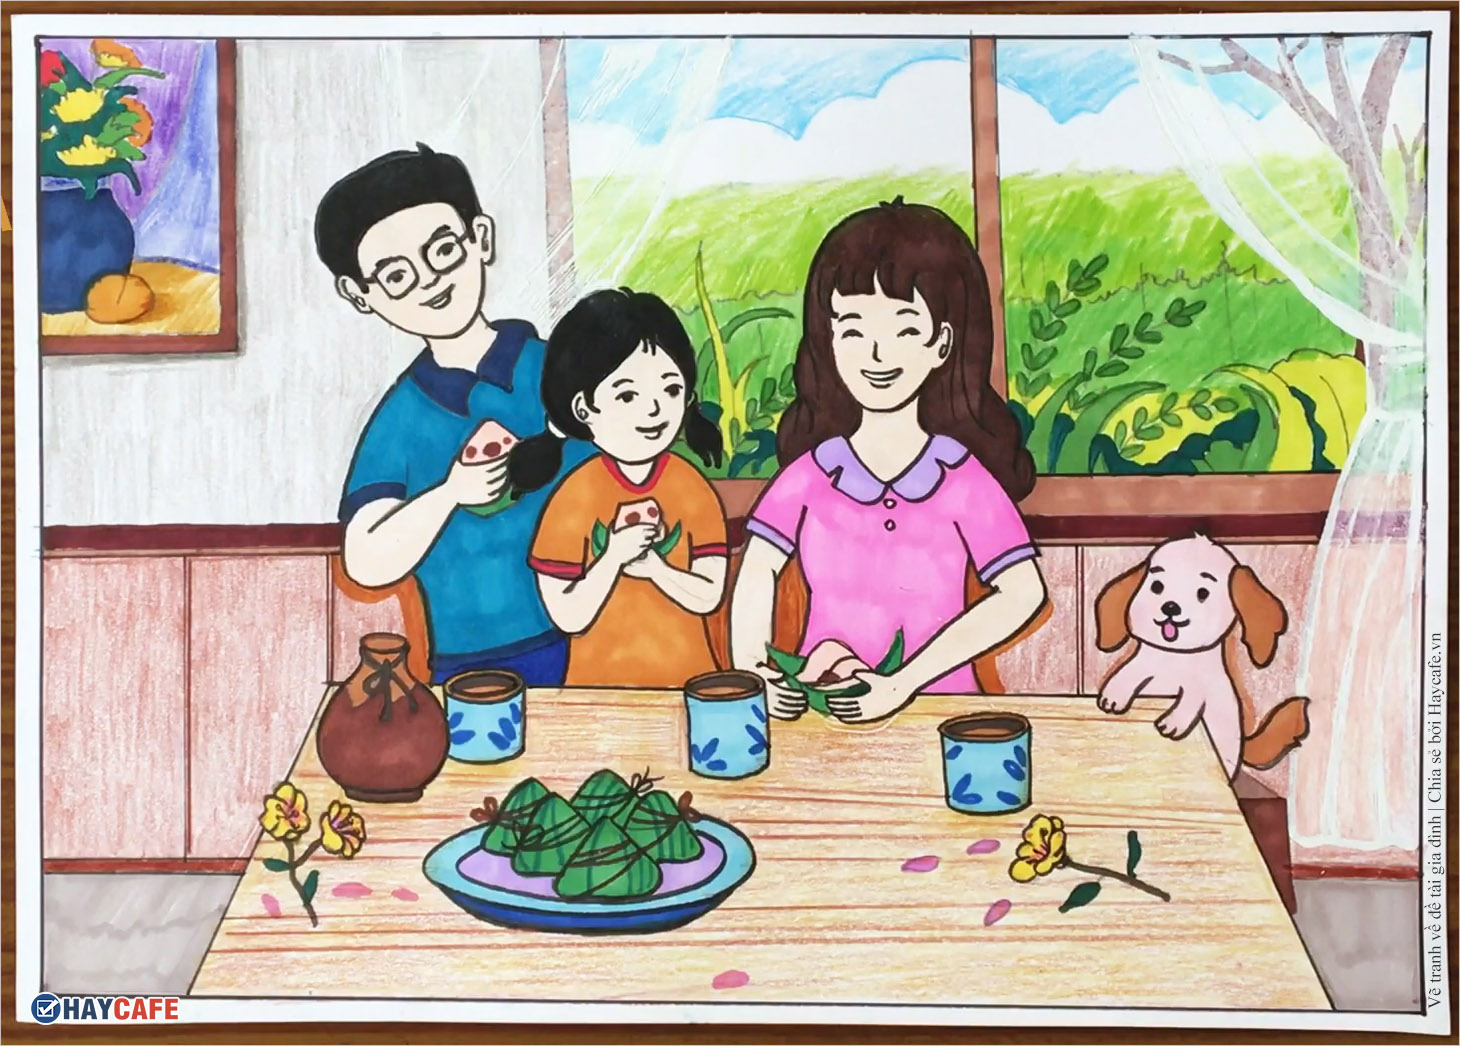 Vẽ tranh đề tài gia đình  Cách vẽ tranh chủ đề gia đình  How to Draw  Family  YouTube